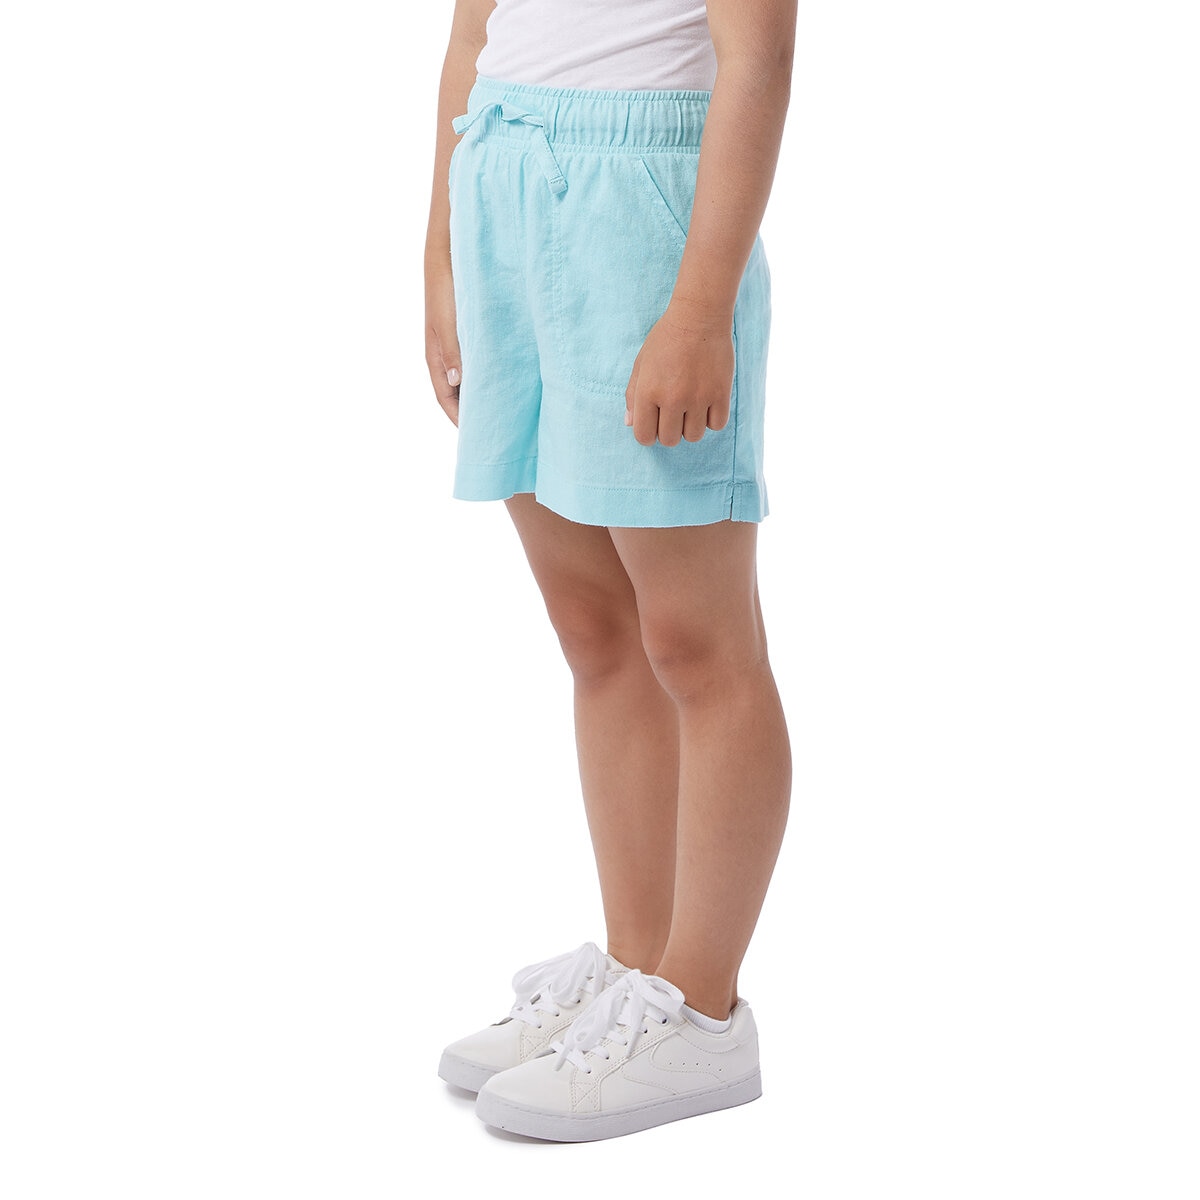 32 Degrees Cool Shorts para Niñas 2 piezas Azul y Azul claro